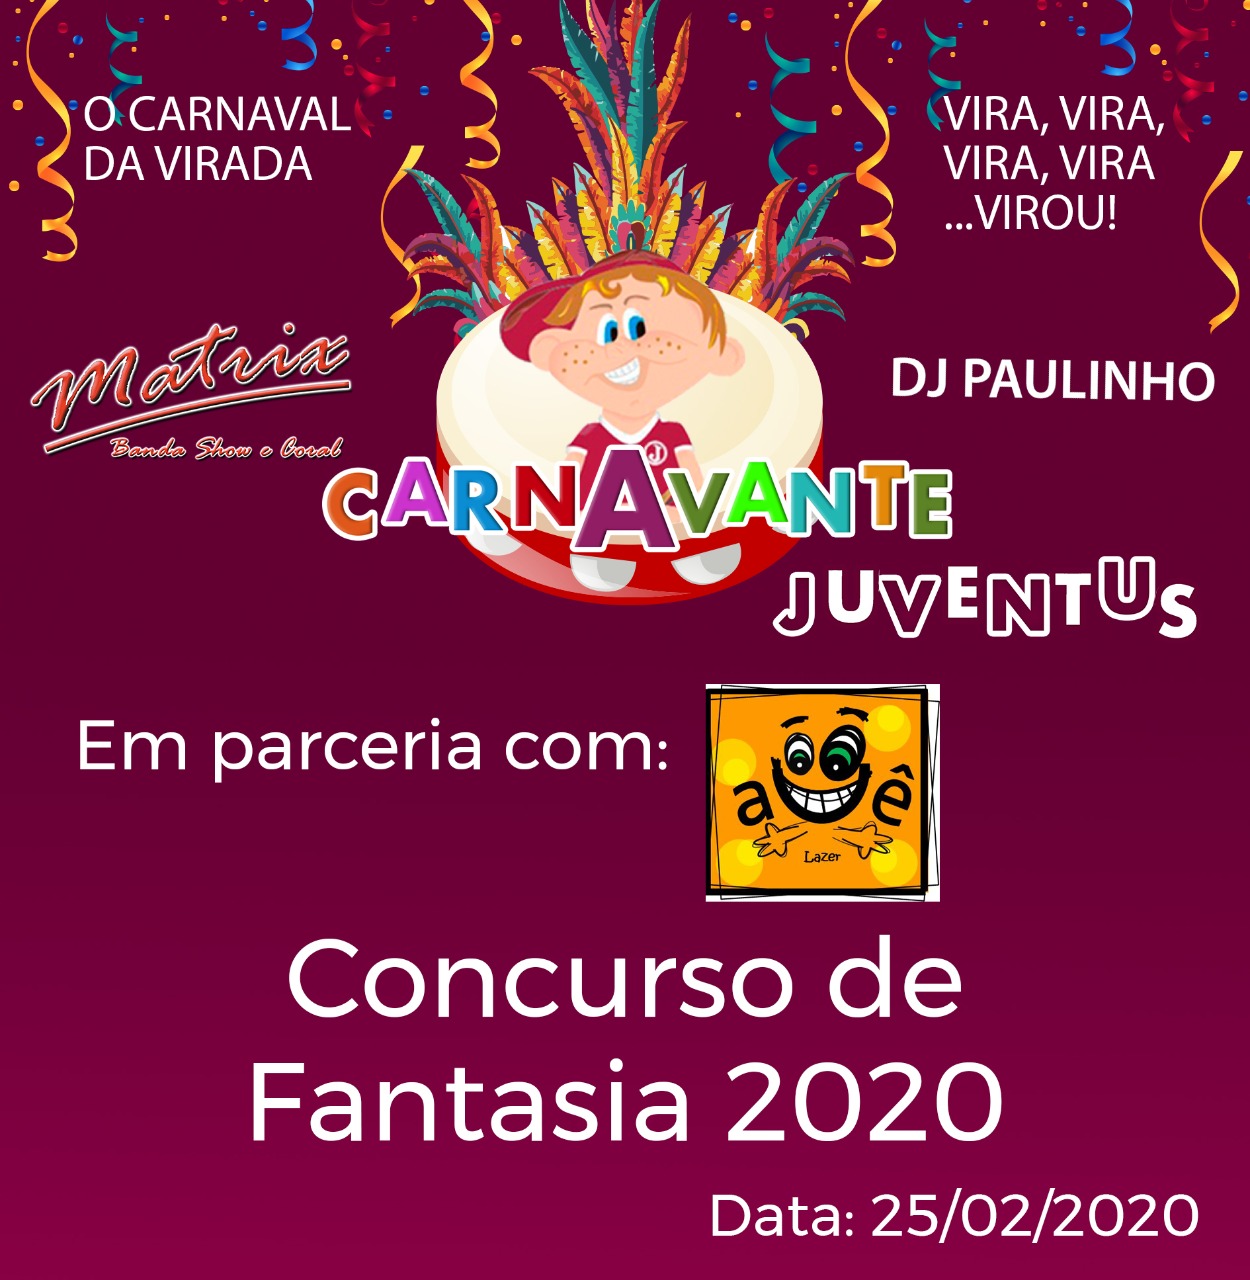 Concurso de Fantasia 2020